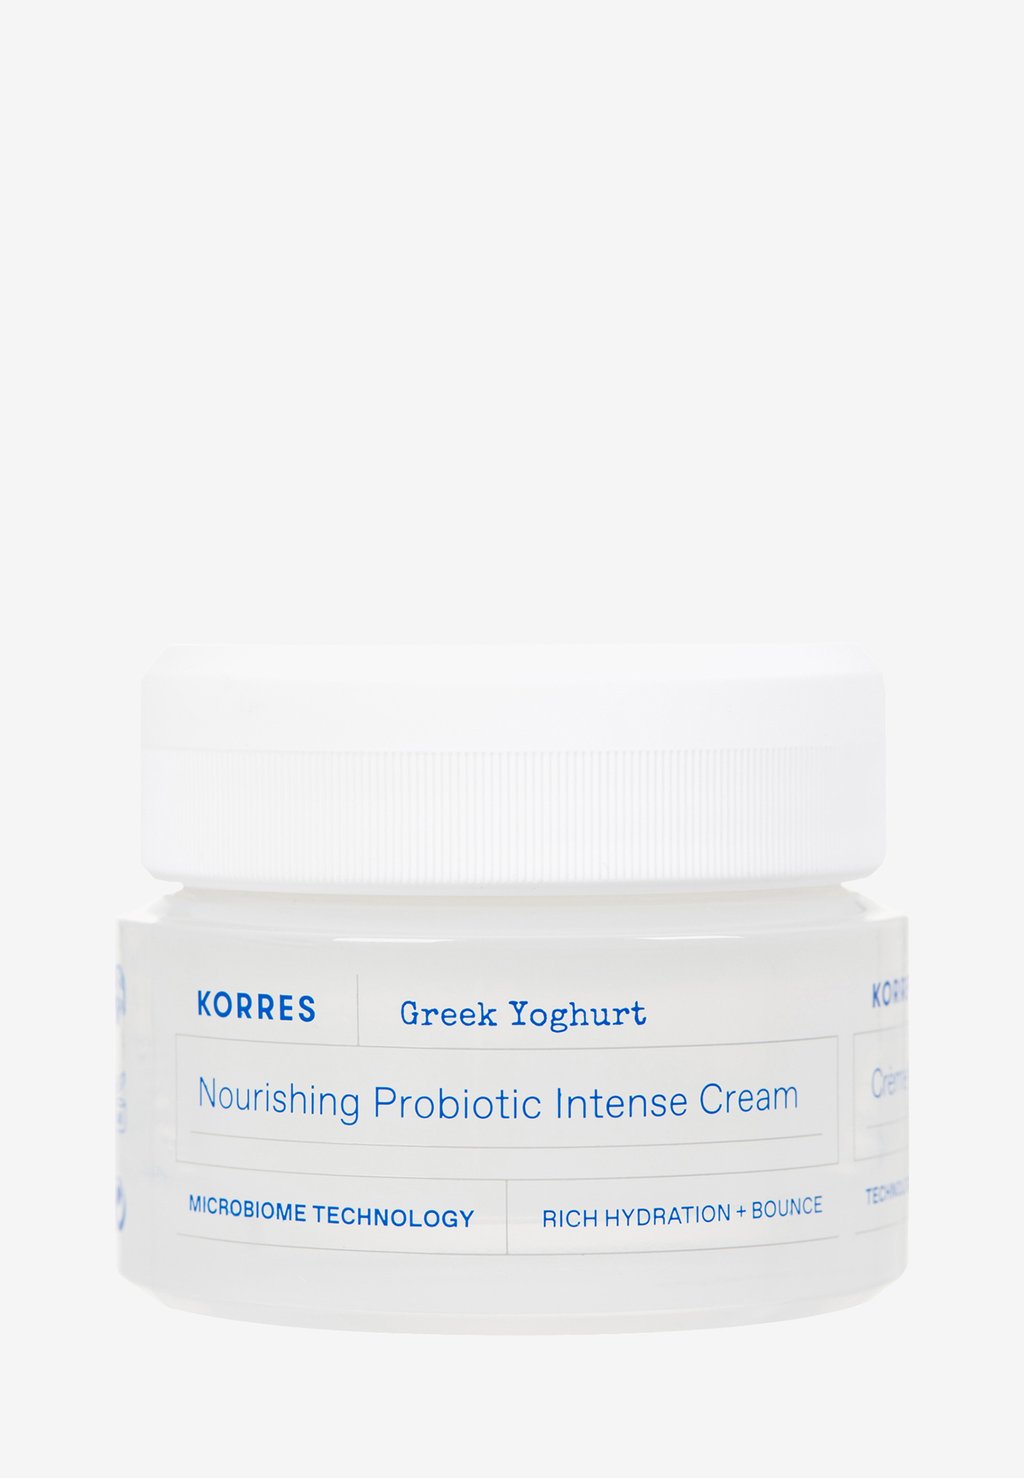 Дневной крем Greek Yoghurt Nourishing Probiotic Intense Cream KORRES ночной крем для лица korres greek yoghurt probiotic quench sleeping facial 40 мл